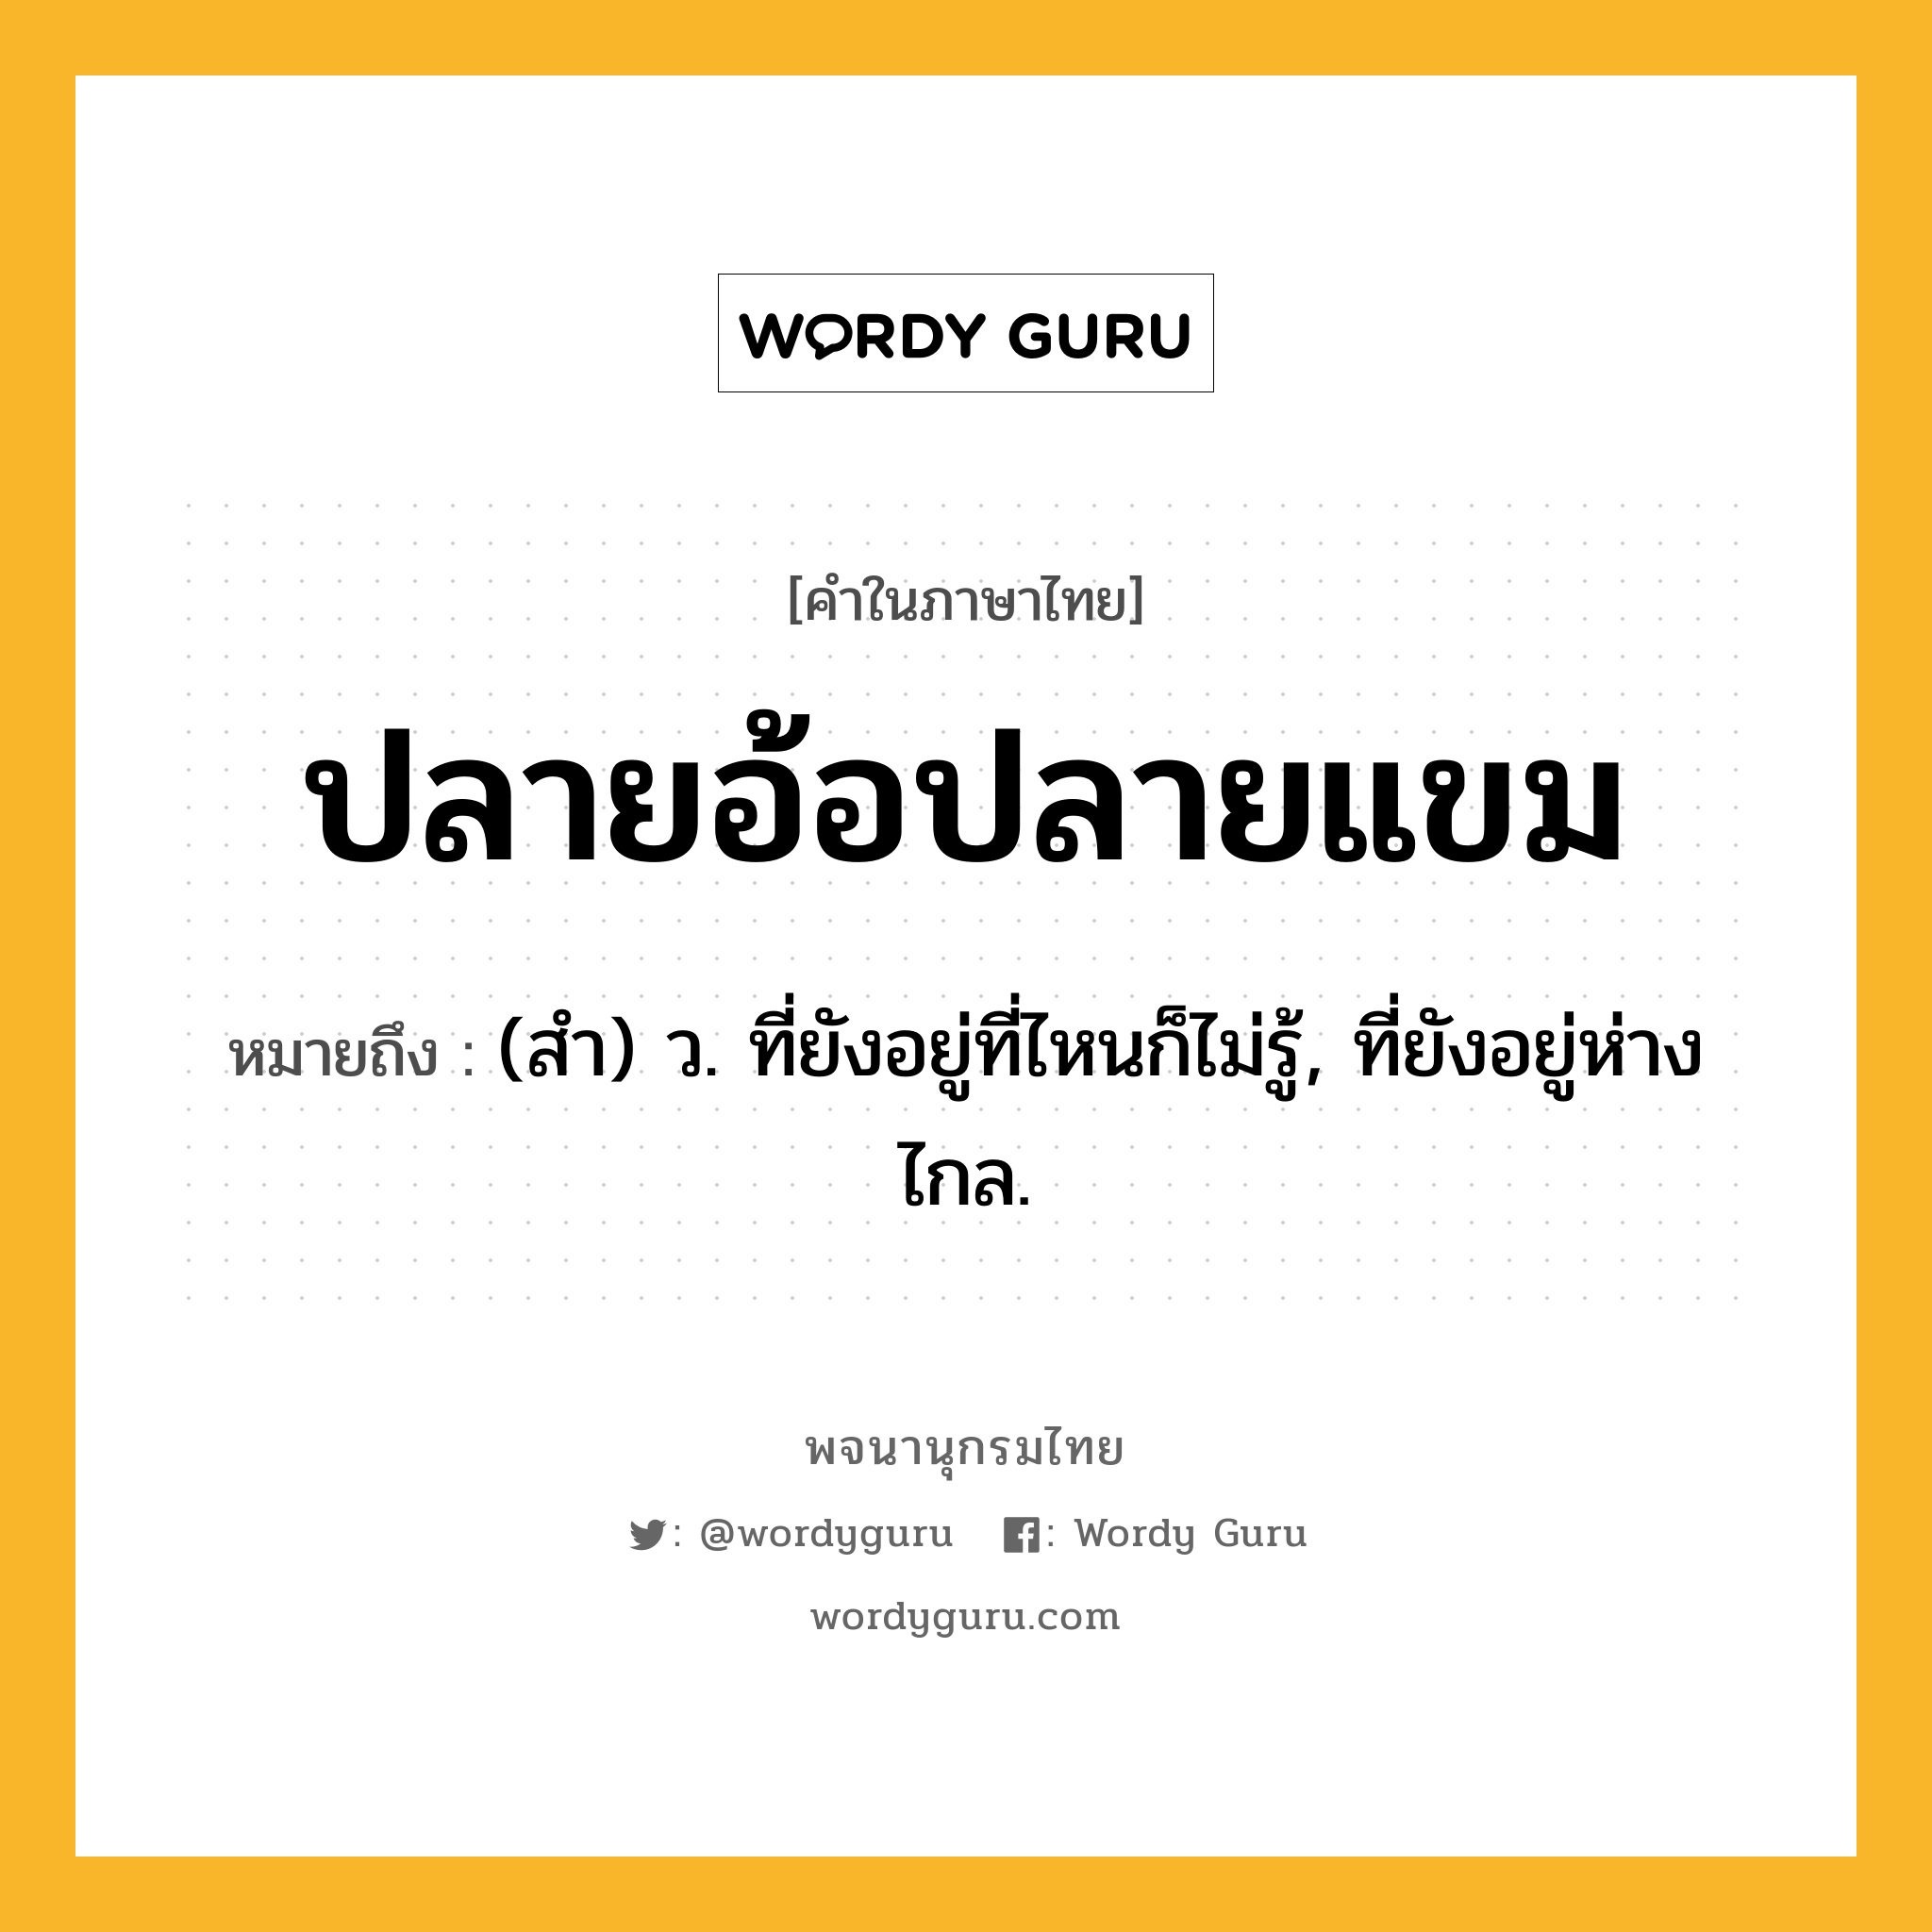 ปลายอ้อปลายแขม หมายถึงอะไร?, คำในภาษาไทย ปลายอ้อปลายแขม หมายถึง (สํา) ว. ที่ยังอยู่ที่ไหนก็ไม่รู้, ที่ยังอยู่ห่างไกล.